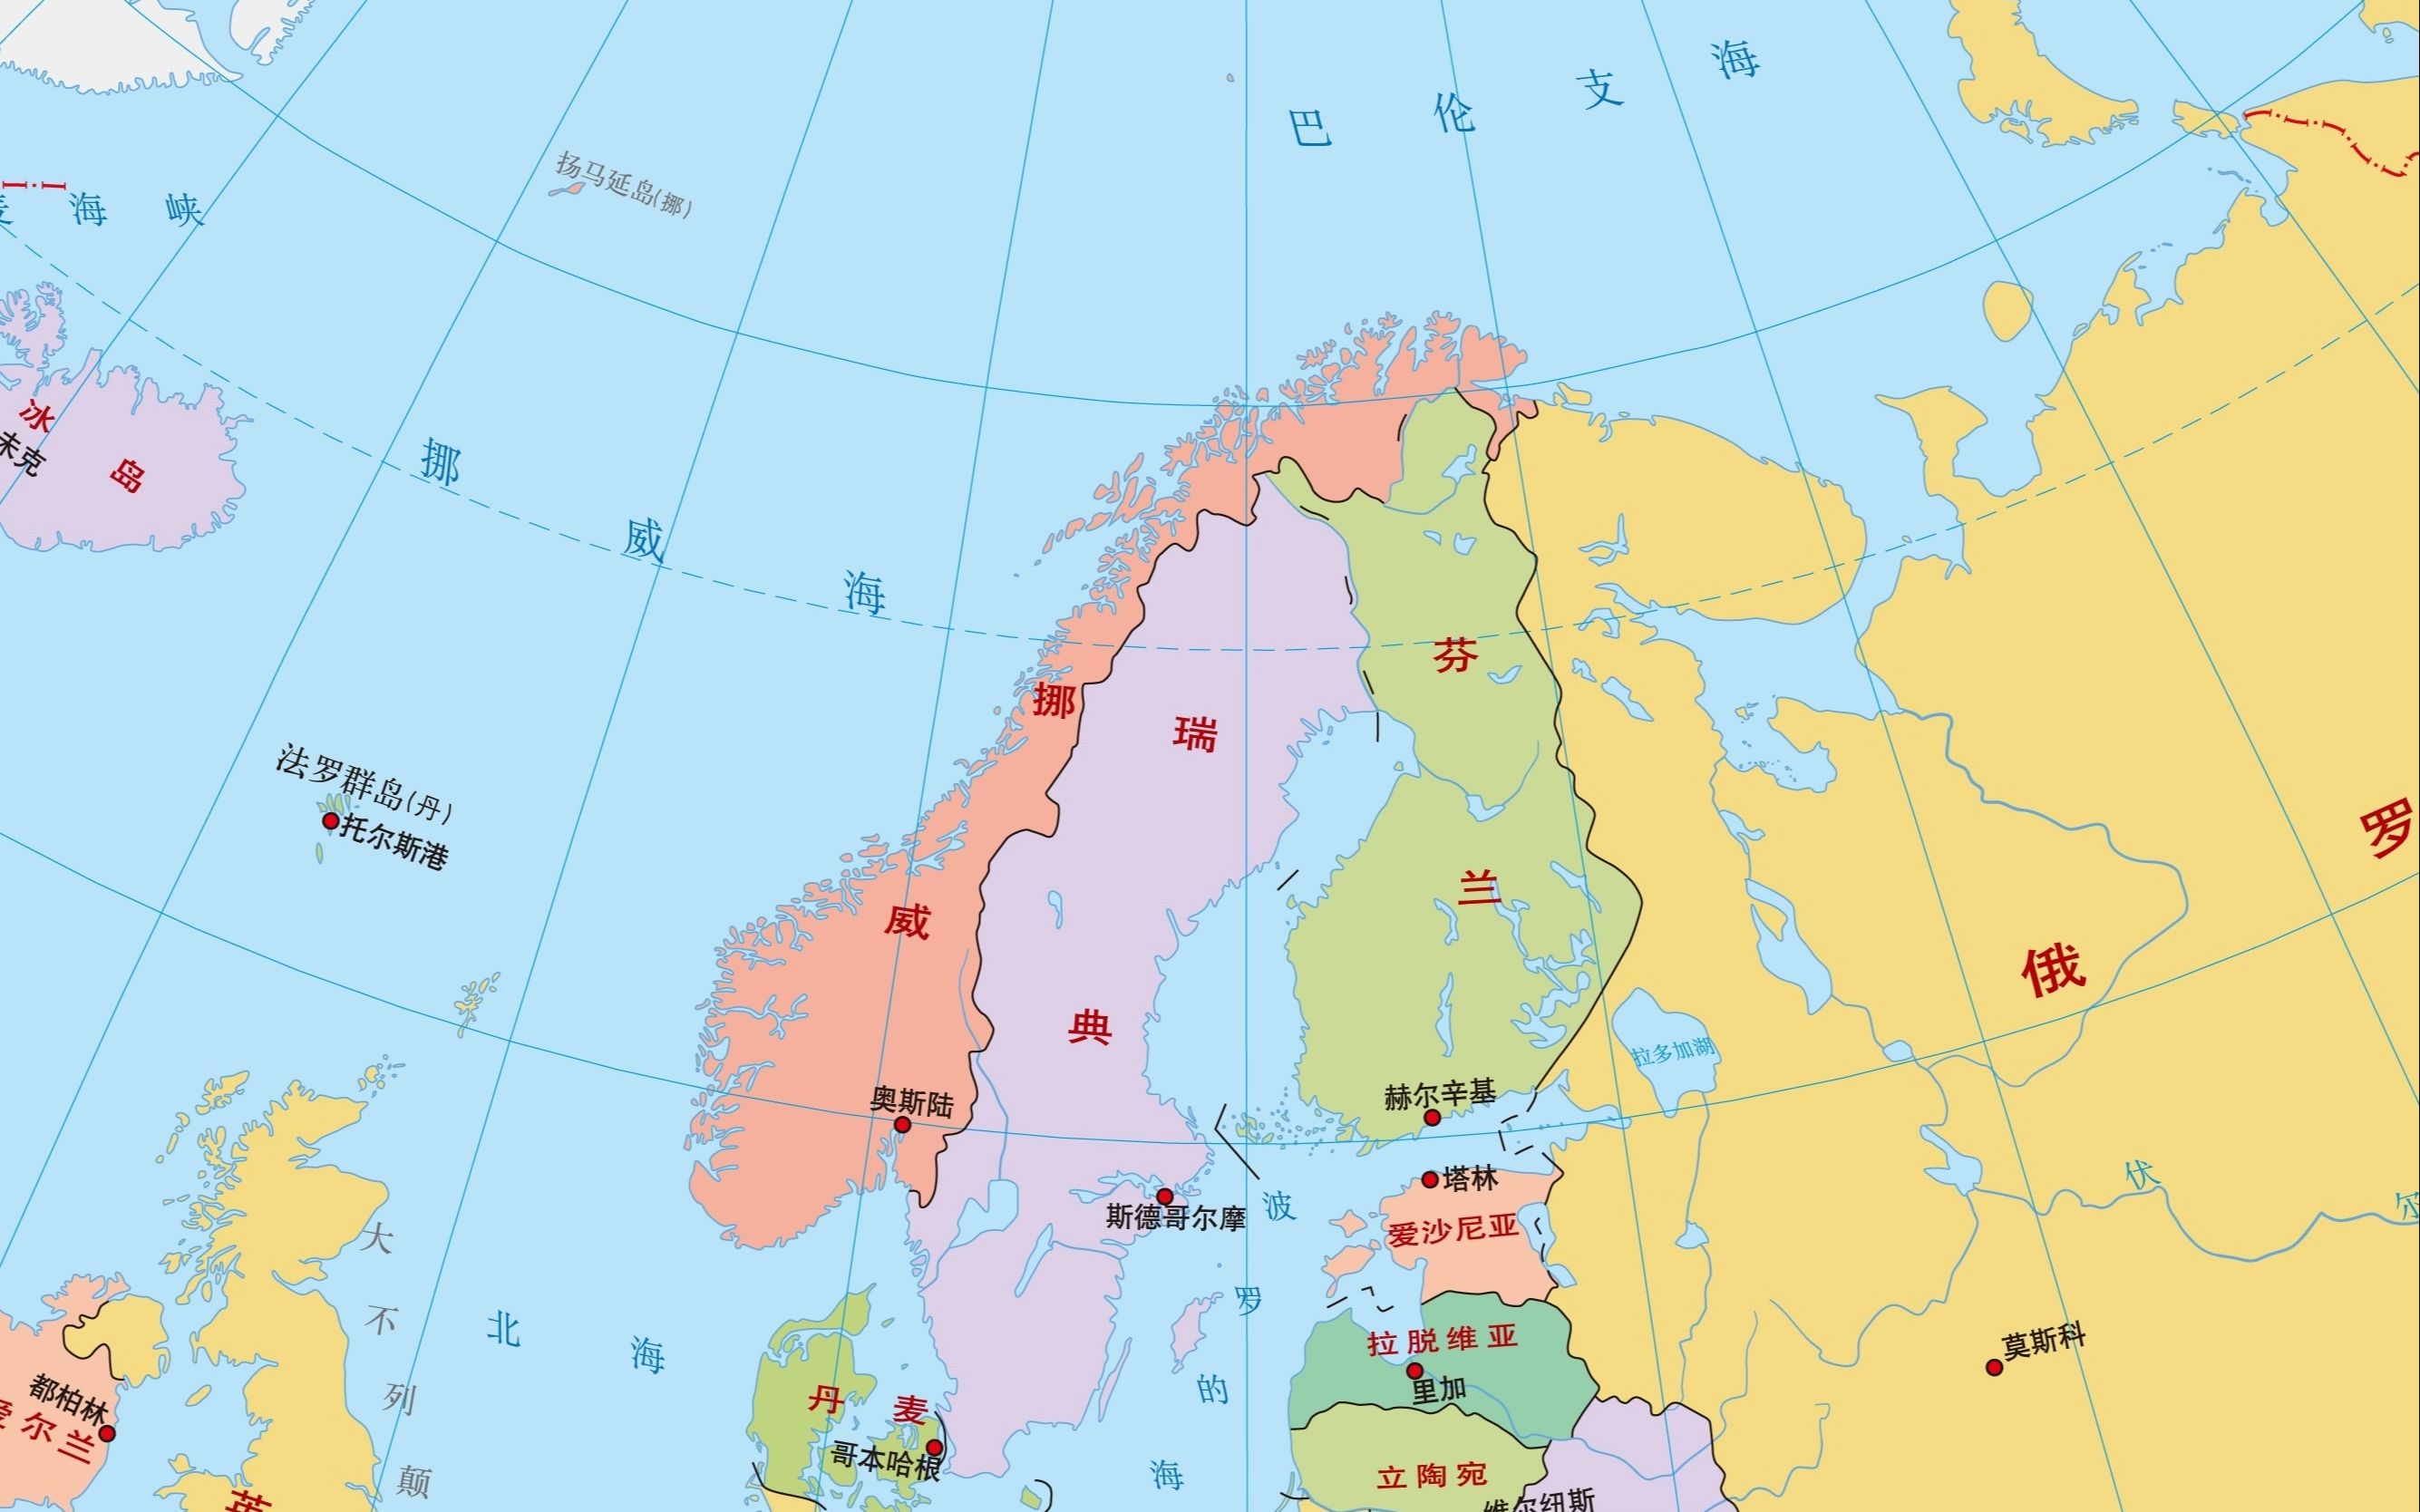 从挪威,瑞典和芬兰三国的首都位置来看,北欧人其实也怕冷